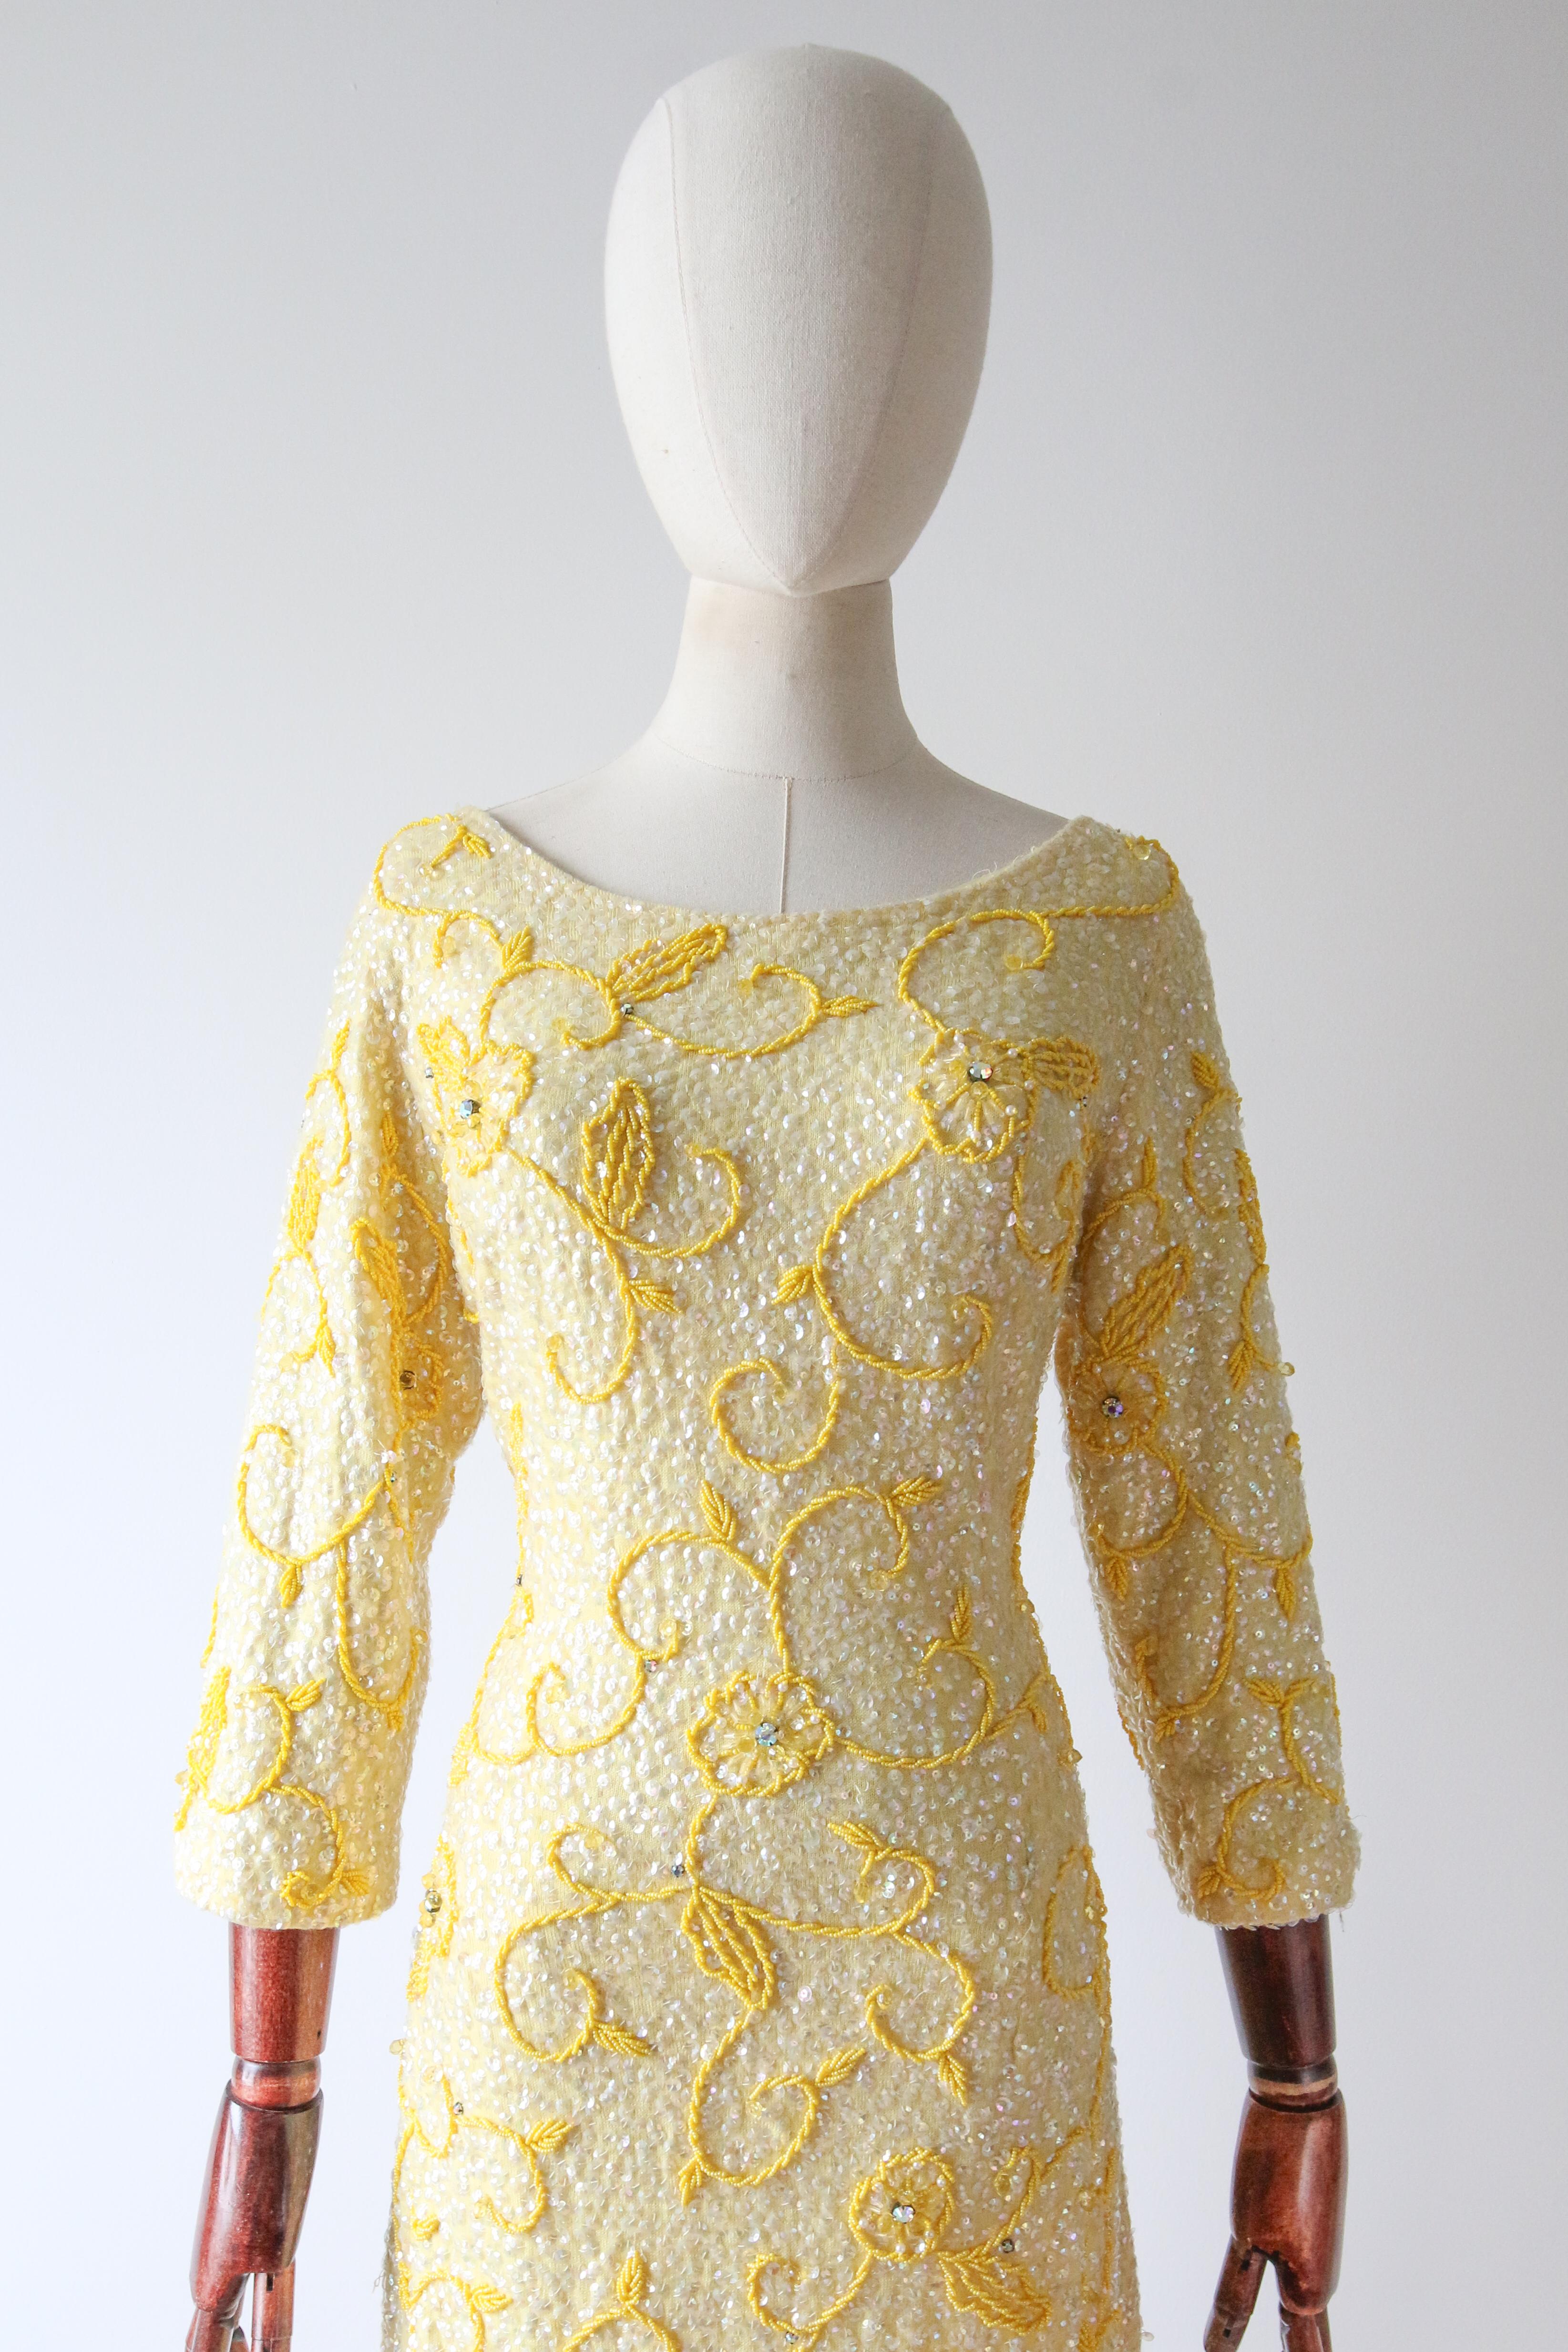 Dieses atemberaubende Kleid aus gelber Strickwolle aus den 1960er Jahren ist komplett mit klaren, schillernden Pailletten verziert und mit floralen Perlendetails aus gelben Rocaille-Perlen und schillernden Strasssteinen in Krallenform versehen.

Der